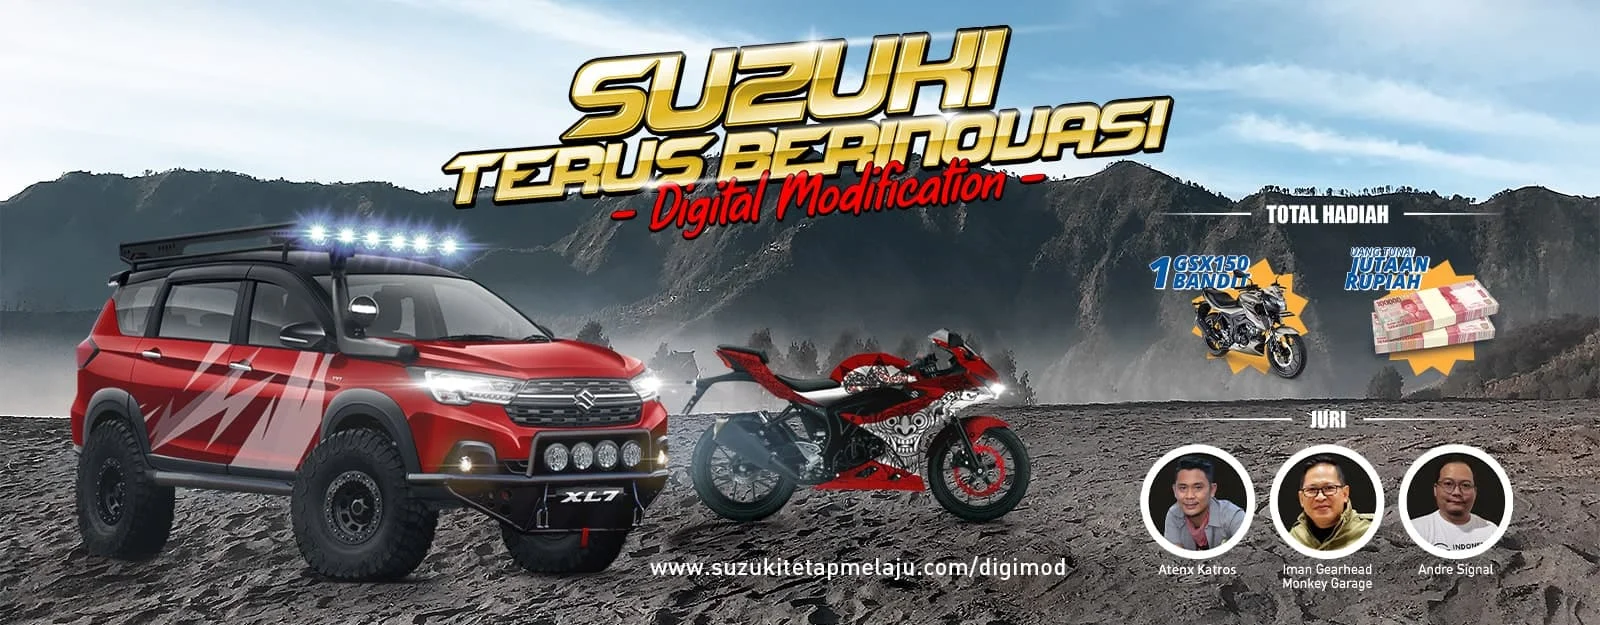 Berhadiah Sepeda Motor Dan Uang Tunai Jutaan Rupiah Suzuki Gelar Kontes Modifikasi Digital Suzuki Terus Berinovasi